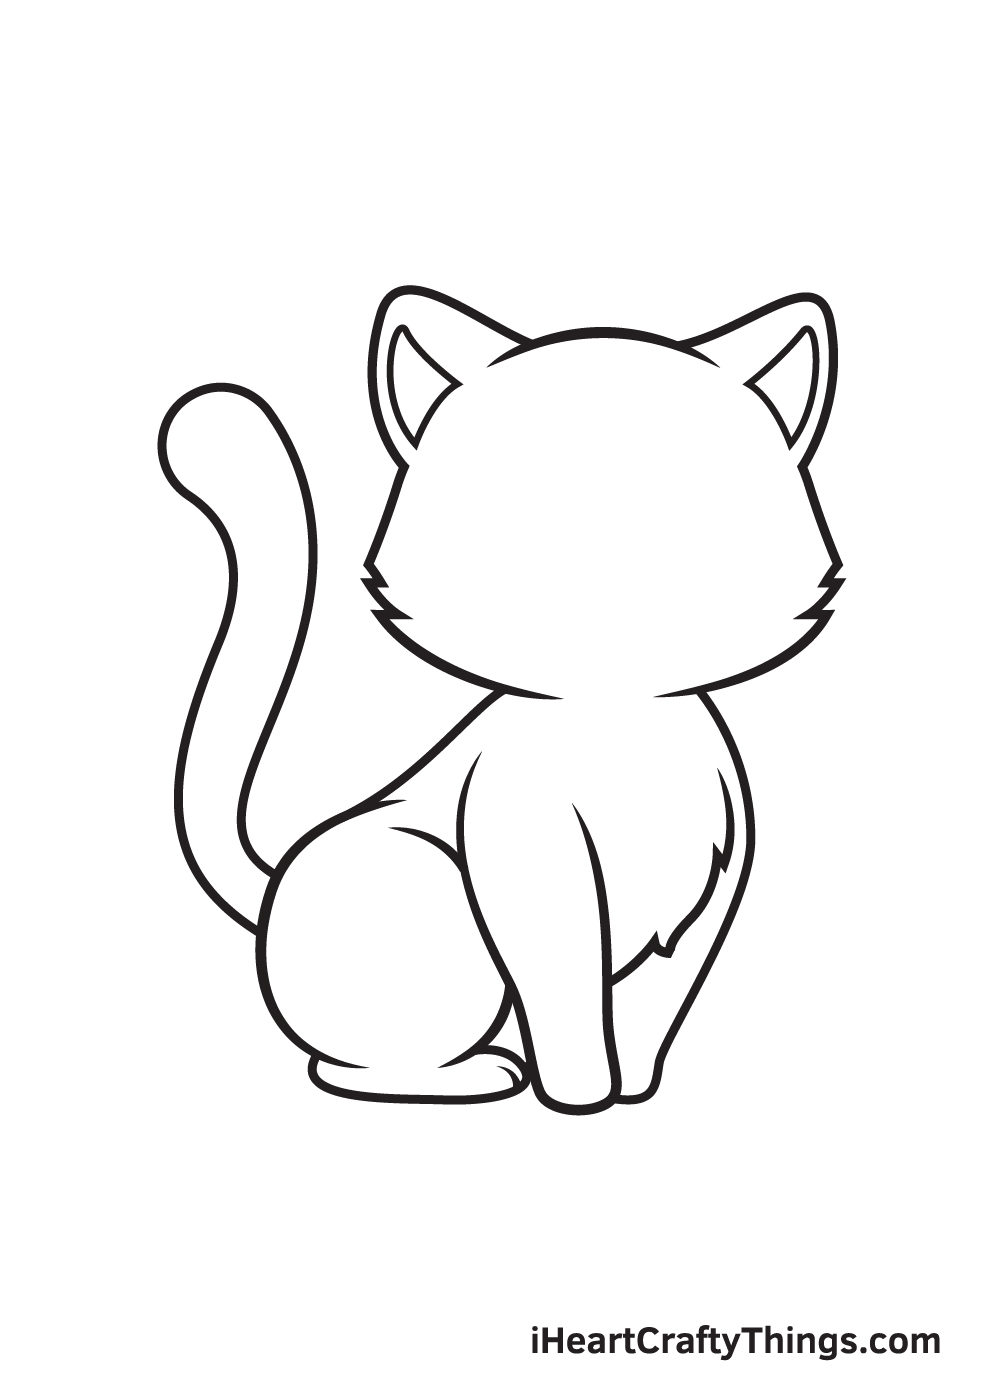 Vẽ mèo con - Bước 7